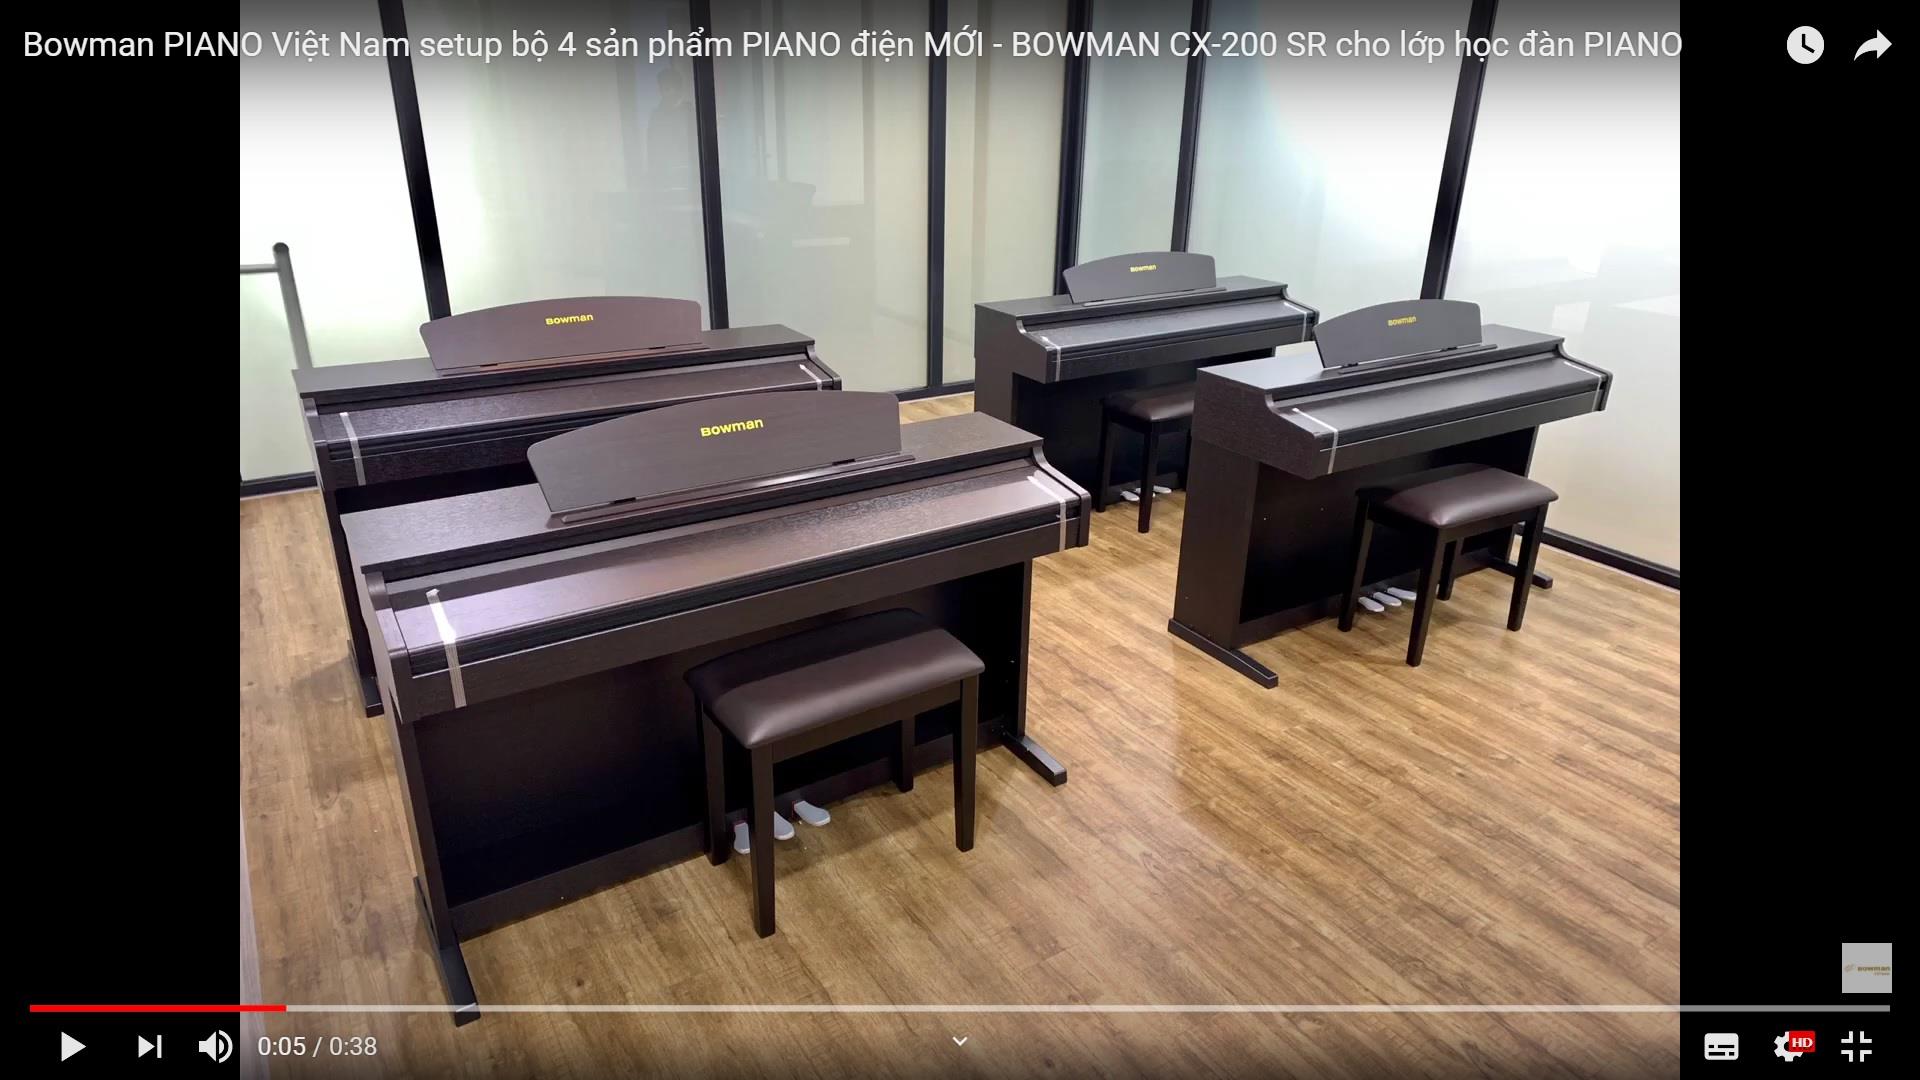 Bowman PIANO Việt Nam setup bộ 4 sản phẩm PIANO điện MỚI - BOWMAN CX-200 SR cho lớp học đàn PIANO